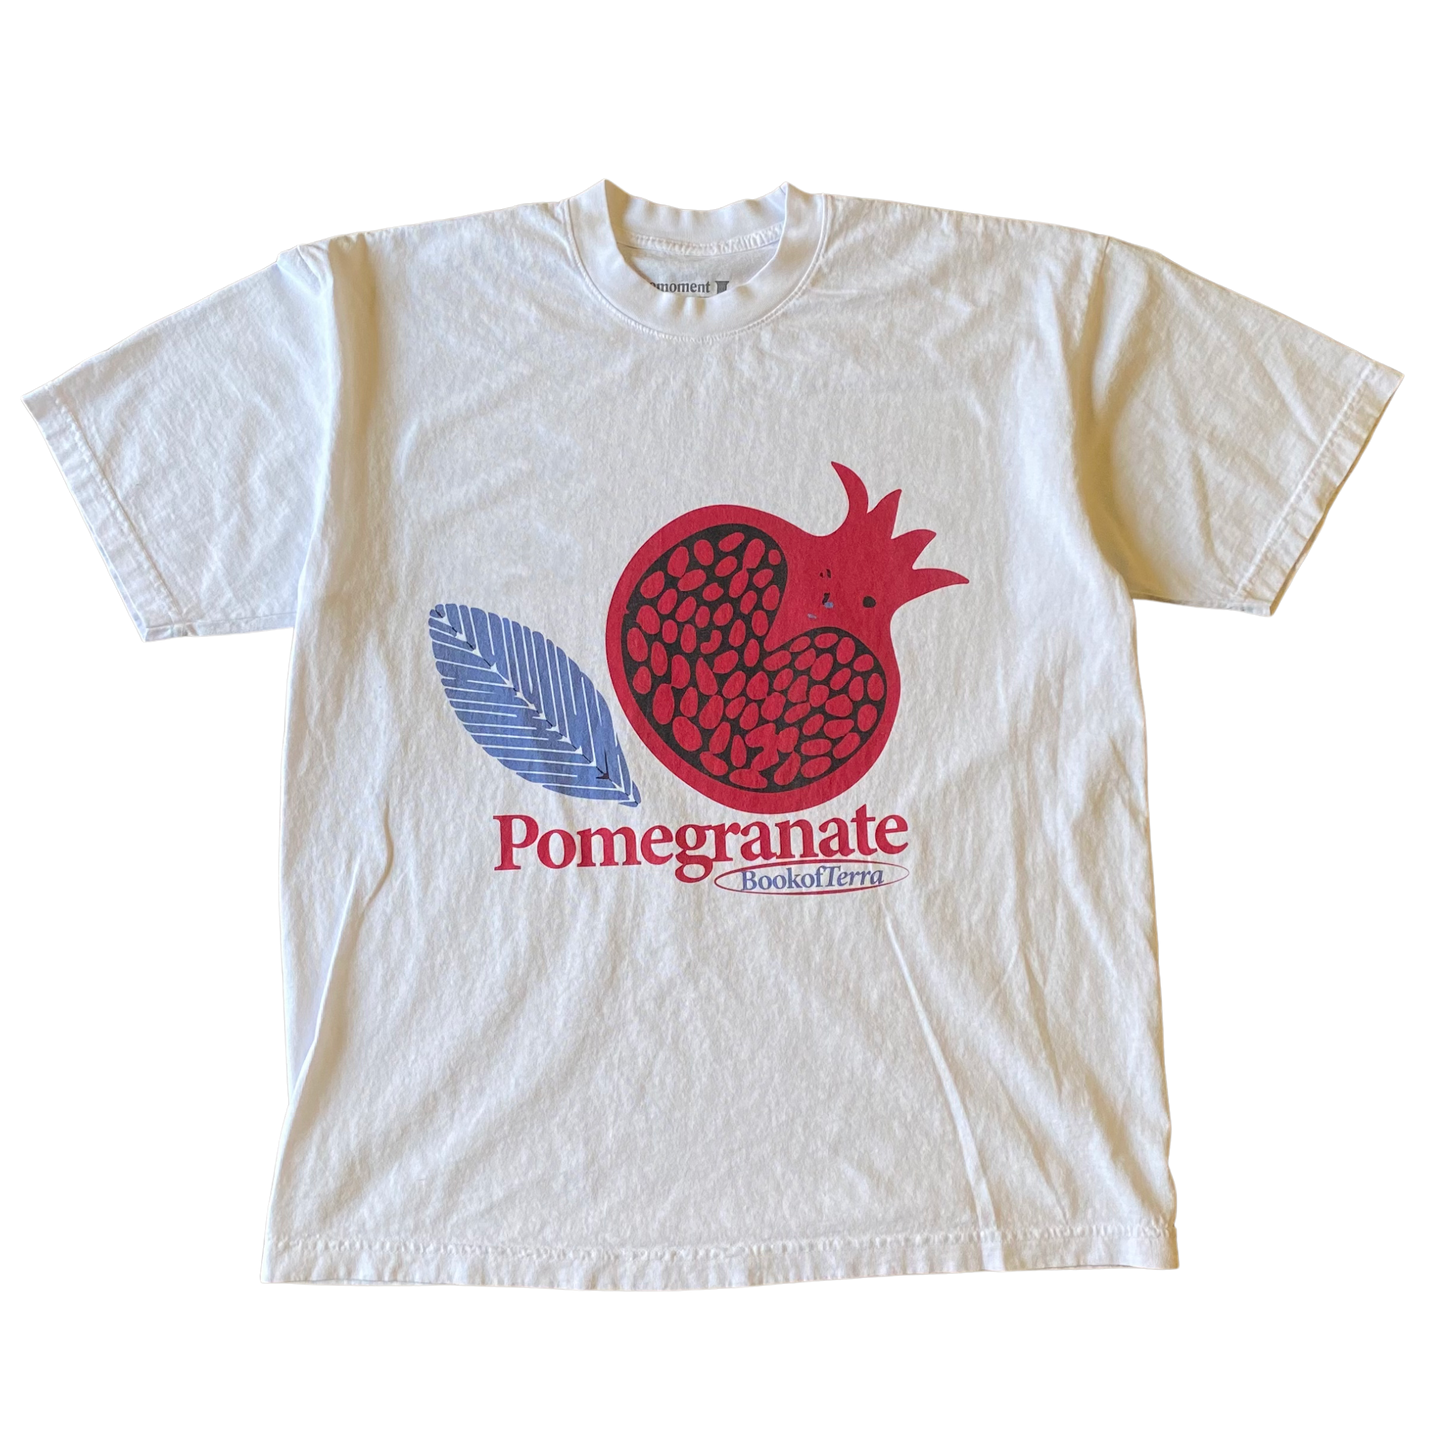 Pomegranate v1 Tee